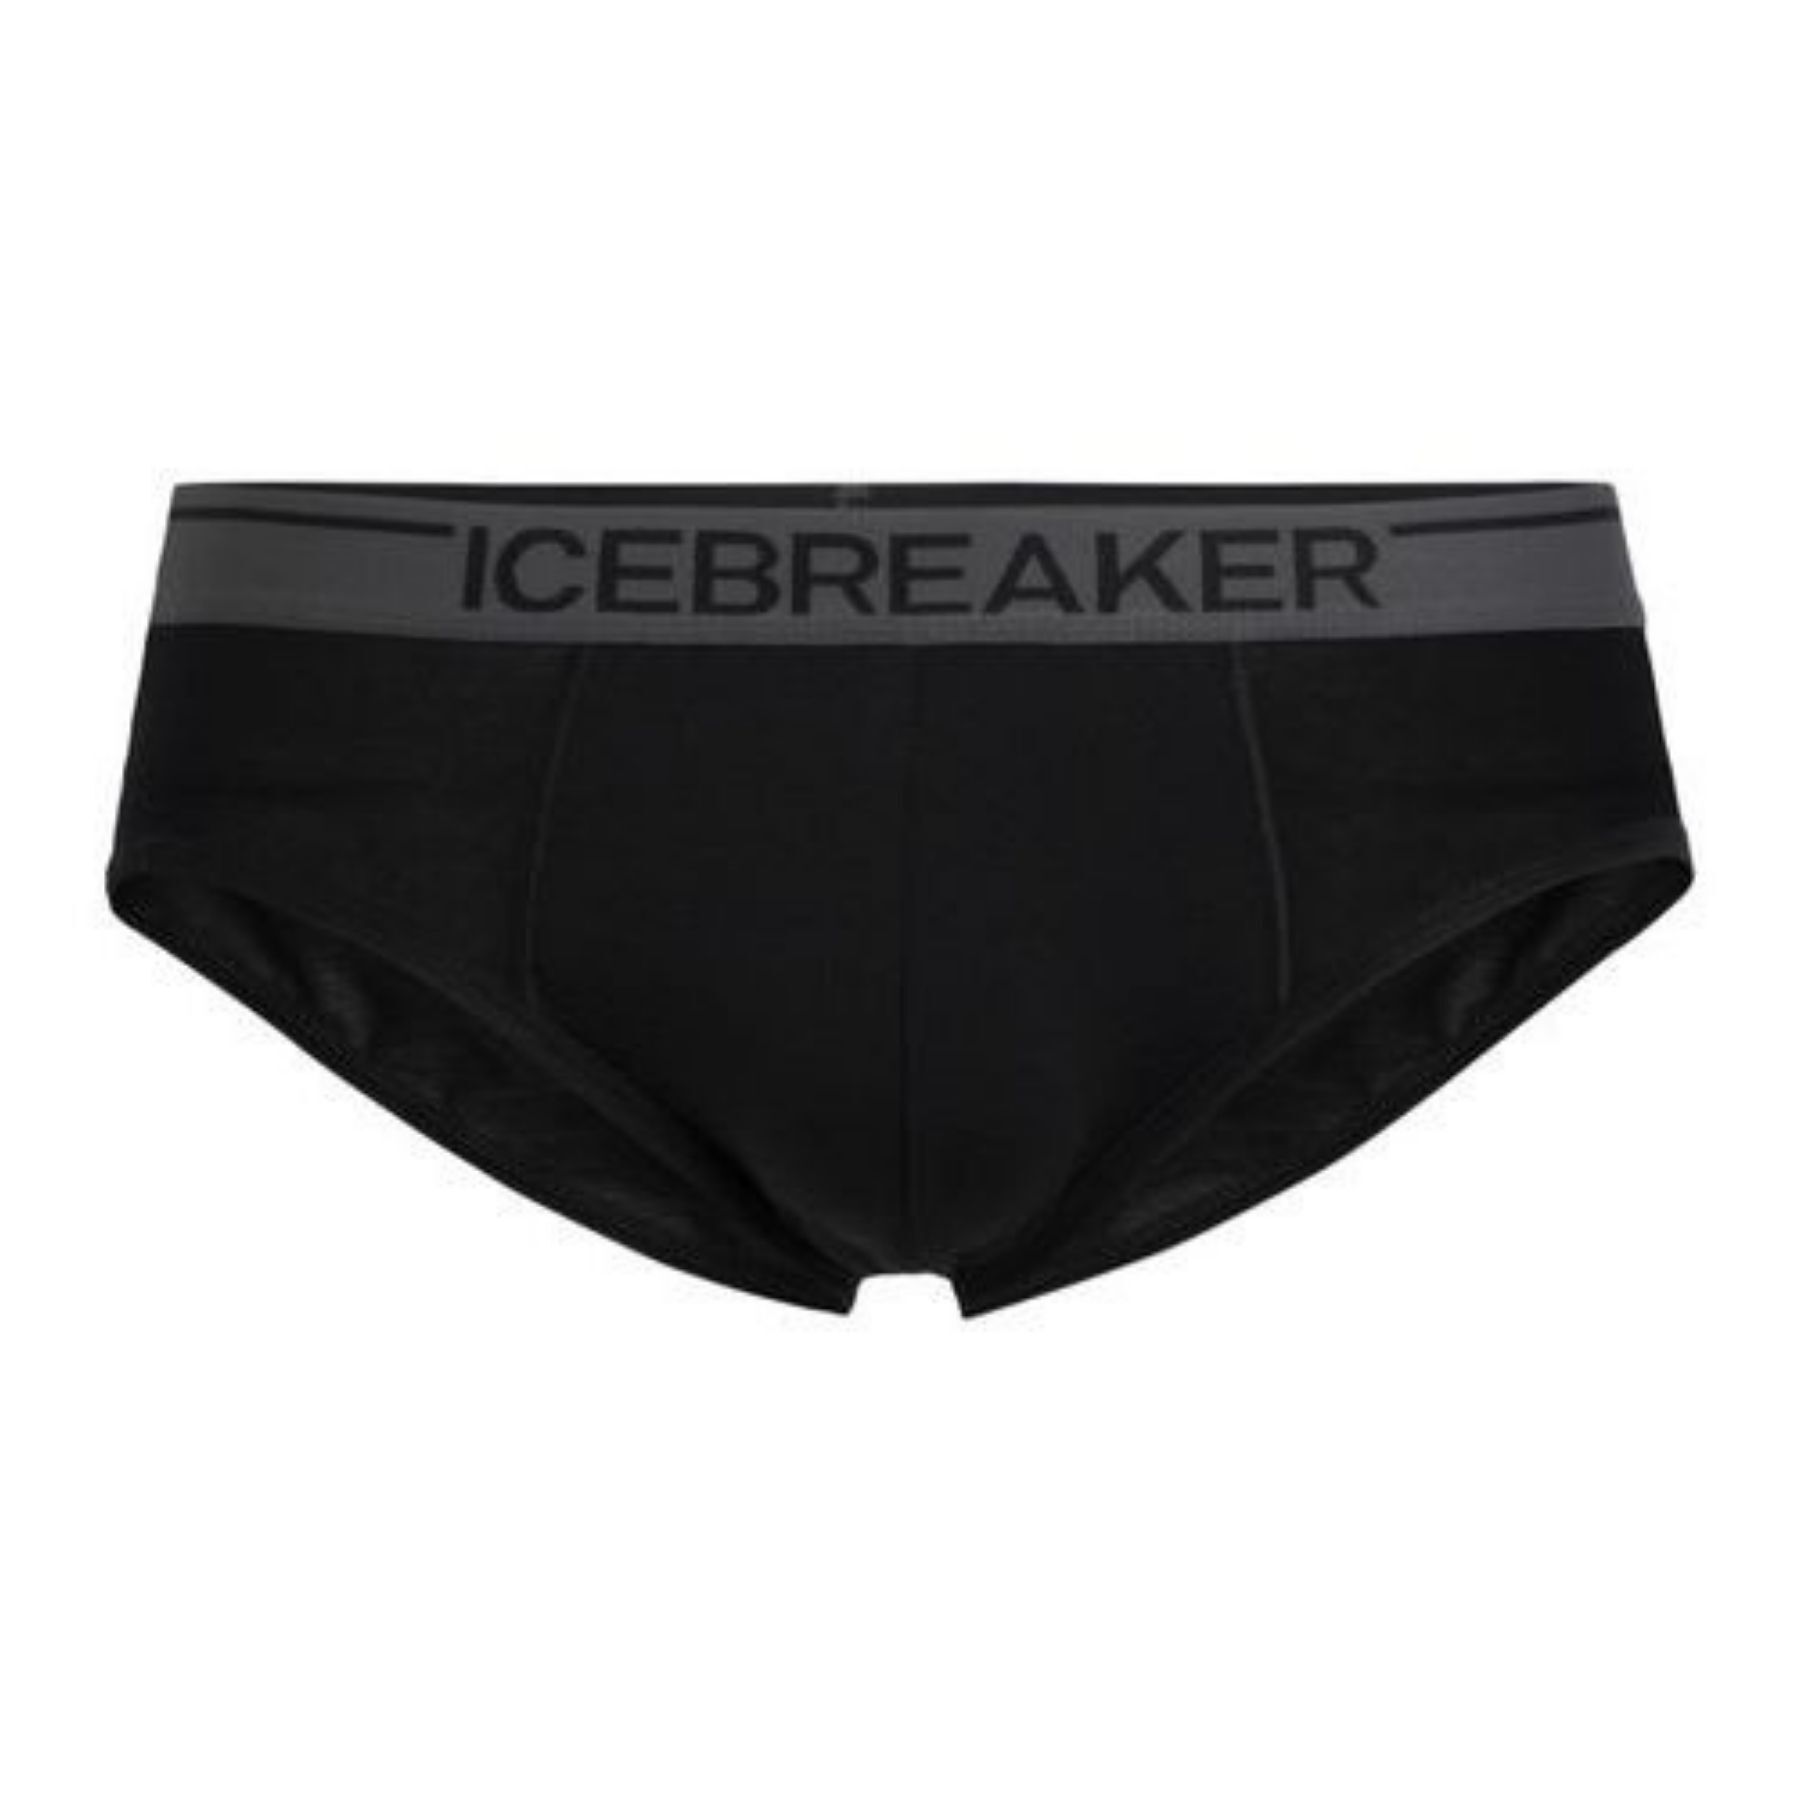 Icebreaker - Anatomica Briefs - Ropa interior - Hombre